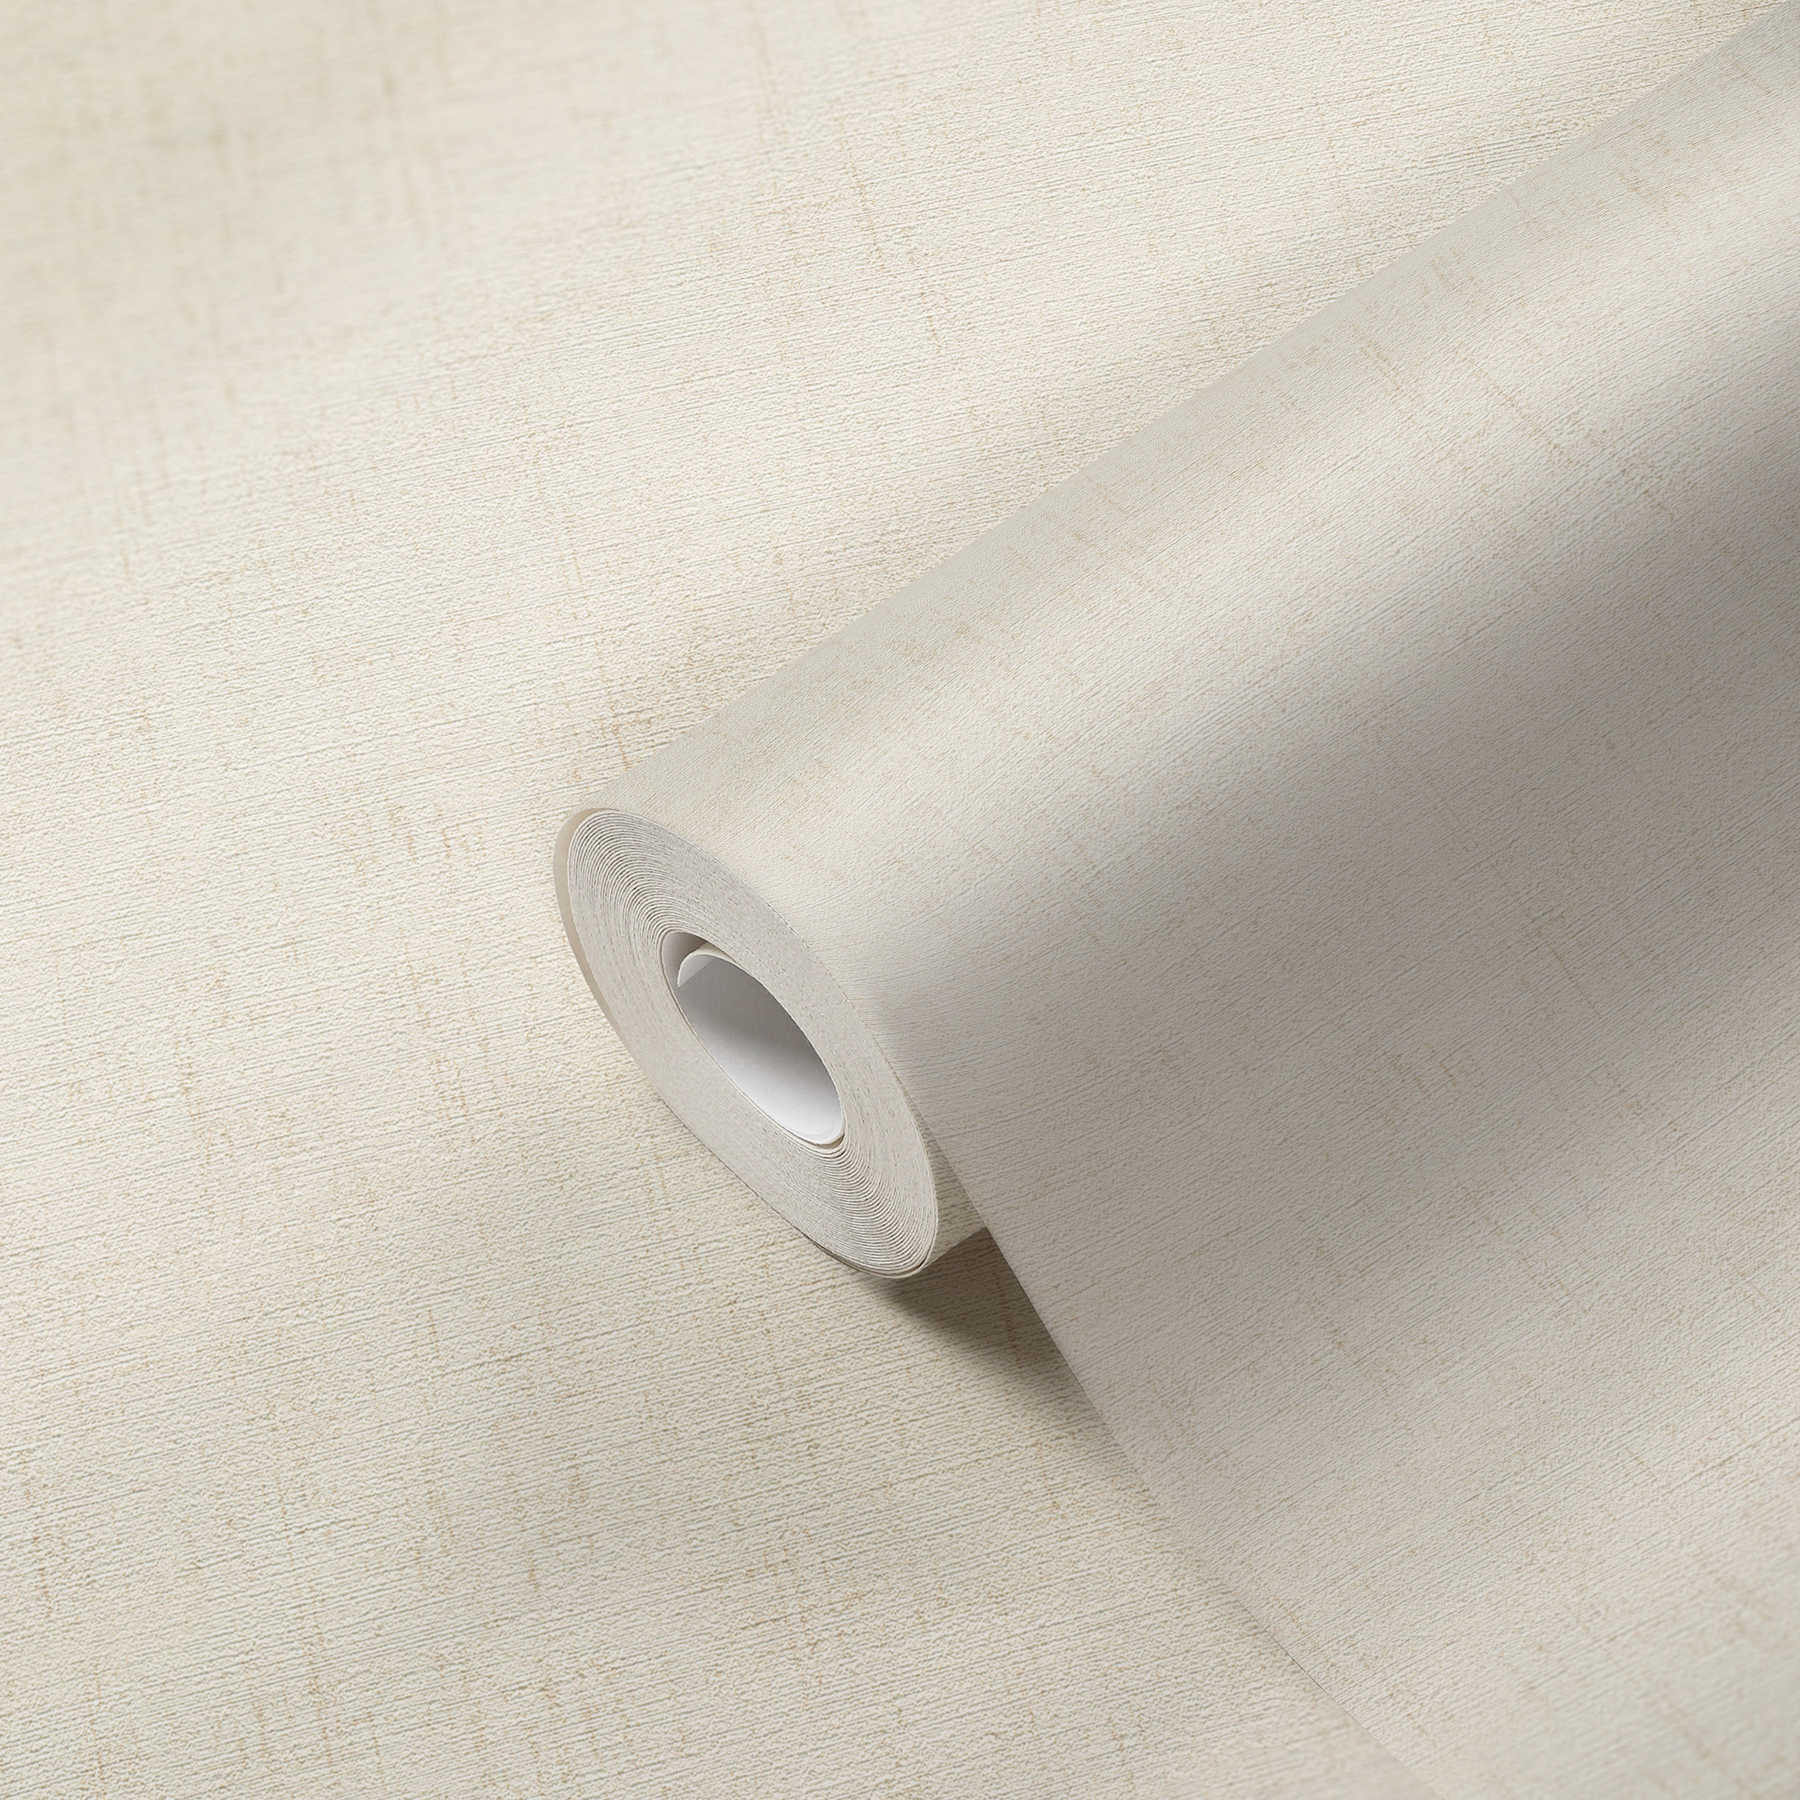             Metallic behang wit met parelmoer glans & structuur oppervlak
        